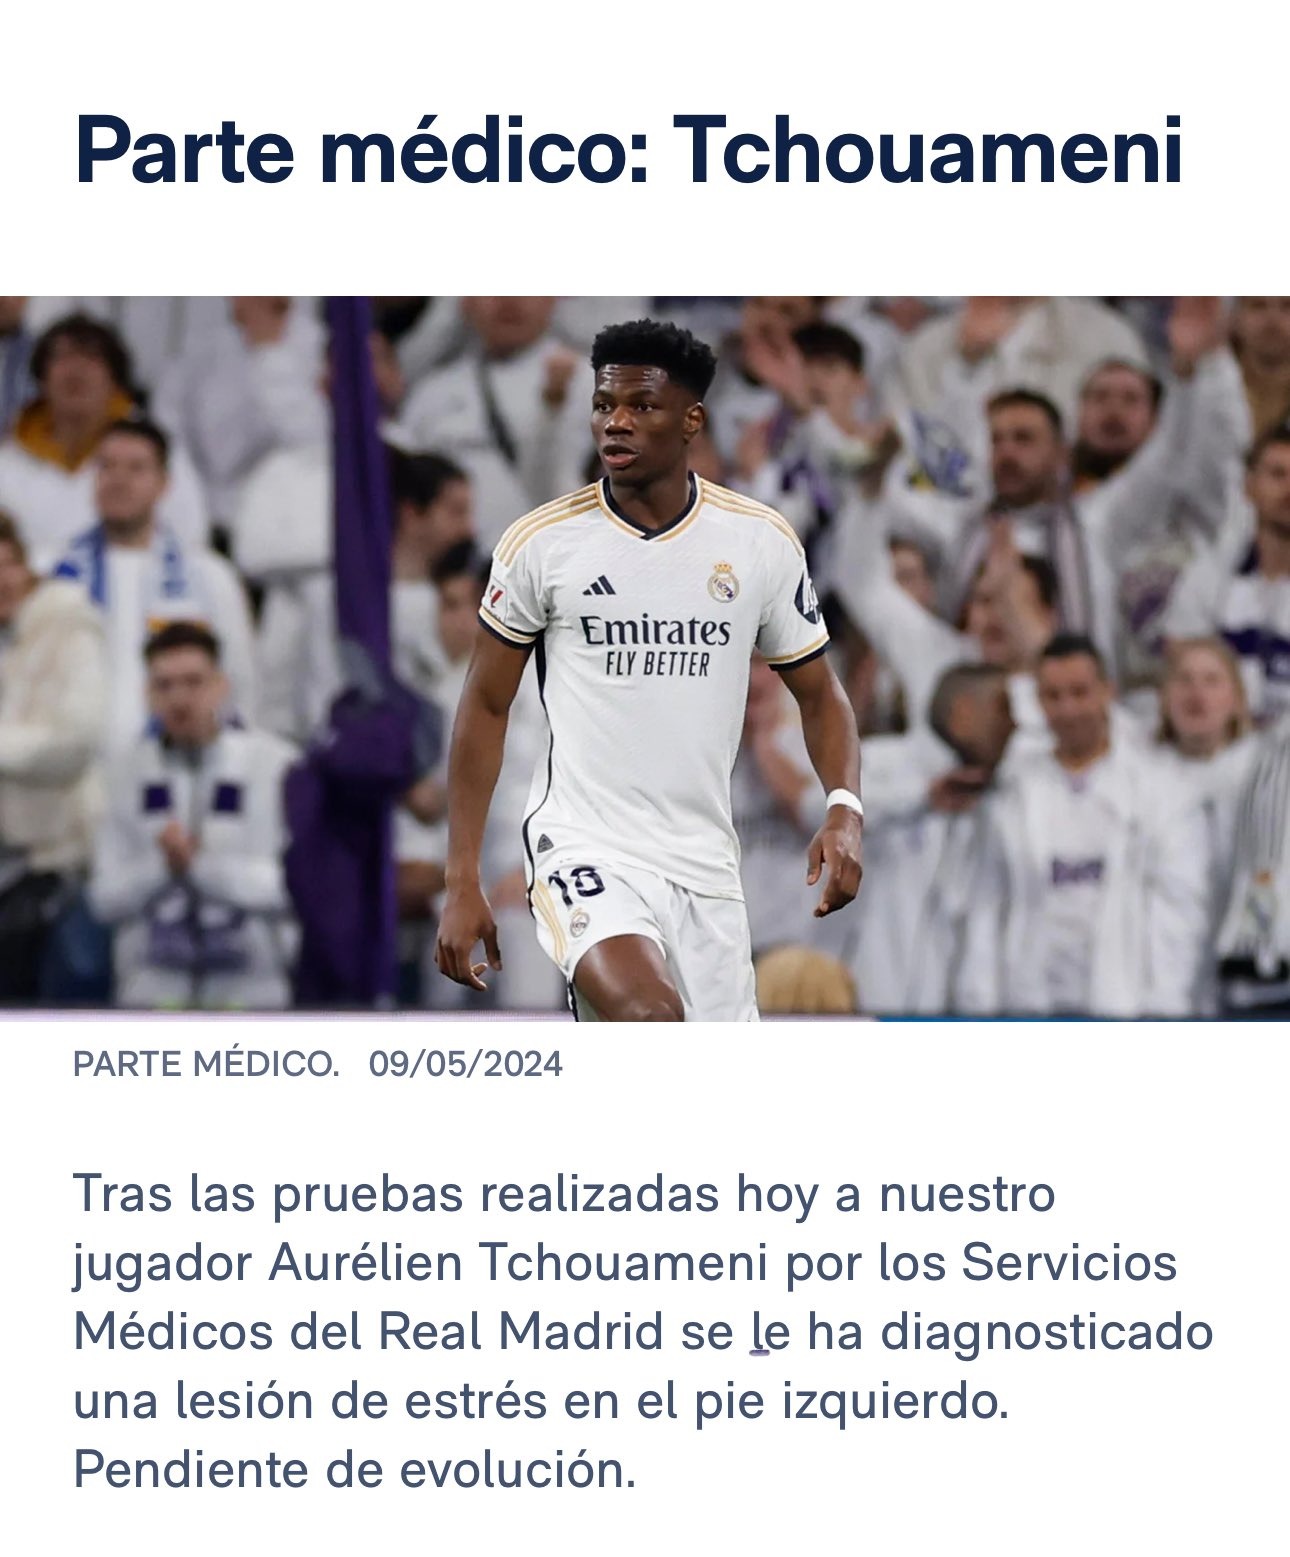 التقرير الطبي لإصابة تشواميني من موقع ريال مدريد الرسمي - 9 مايو 2024